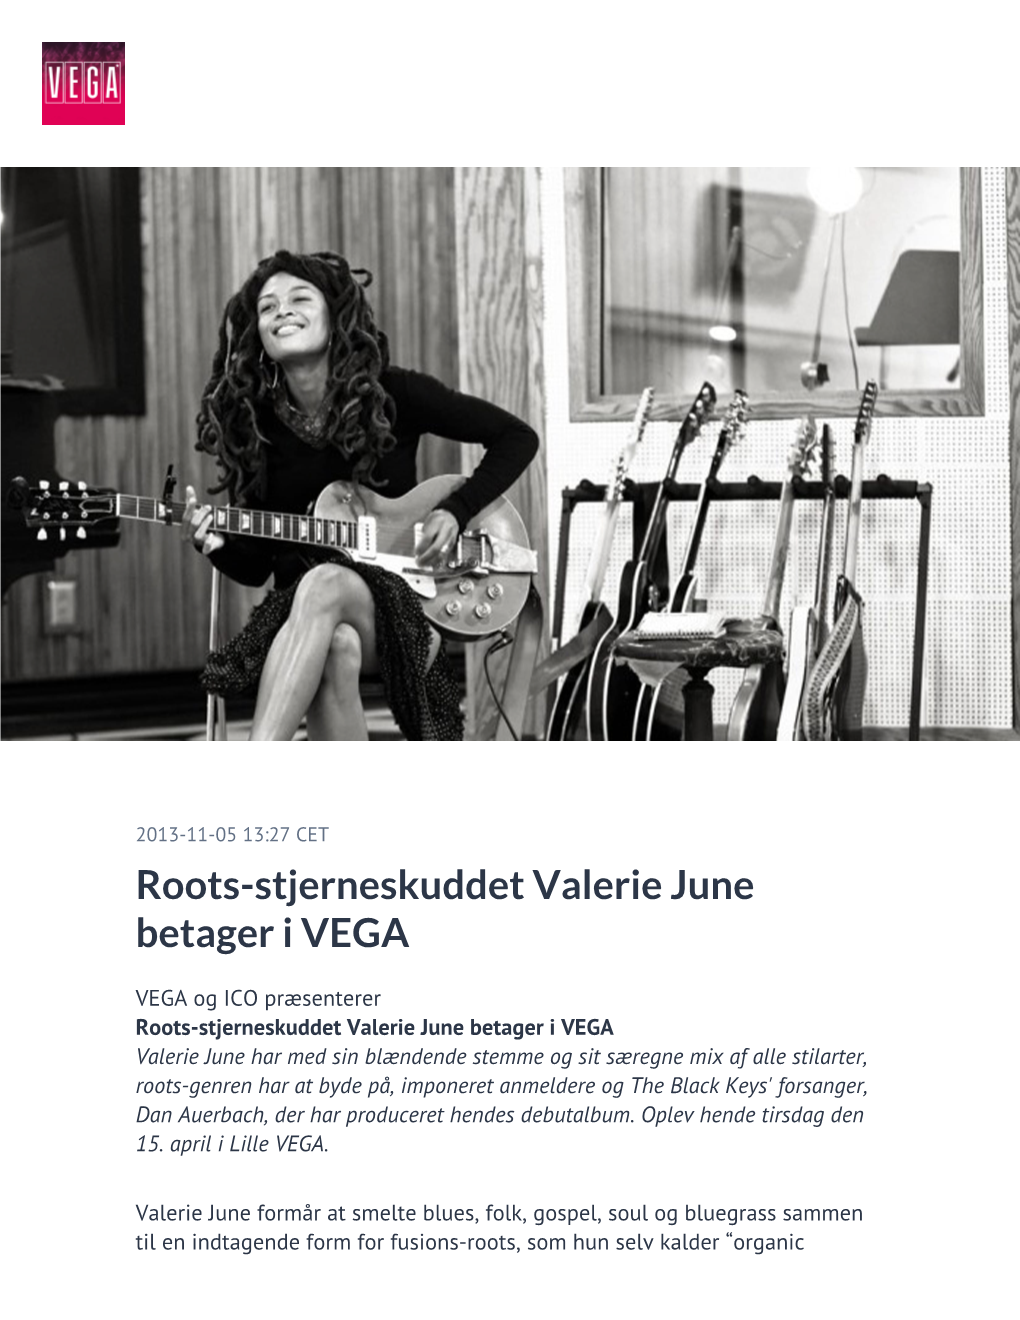 Roots-Stjerneskuddet Valerie June Betager I VEGA